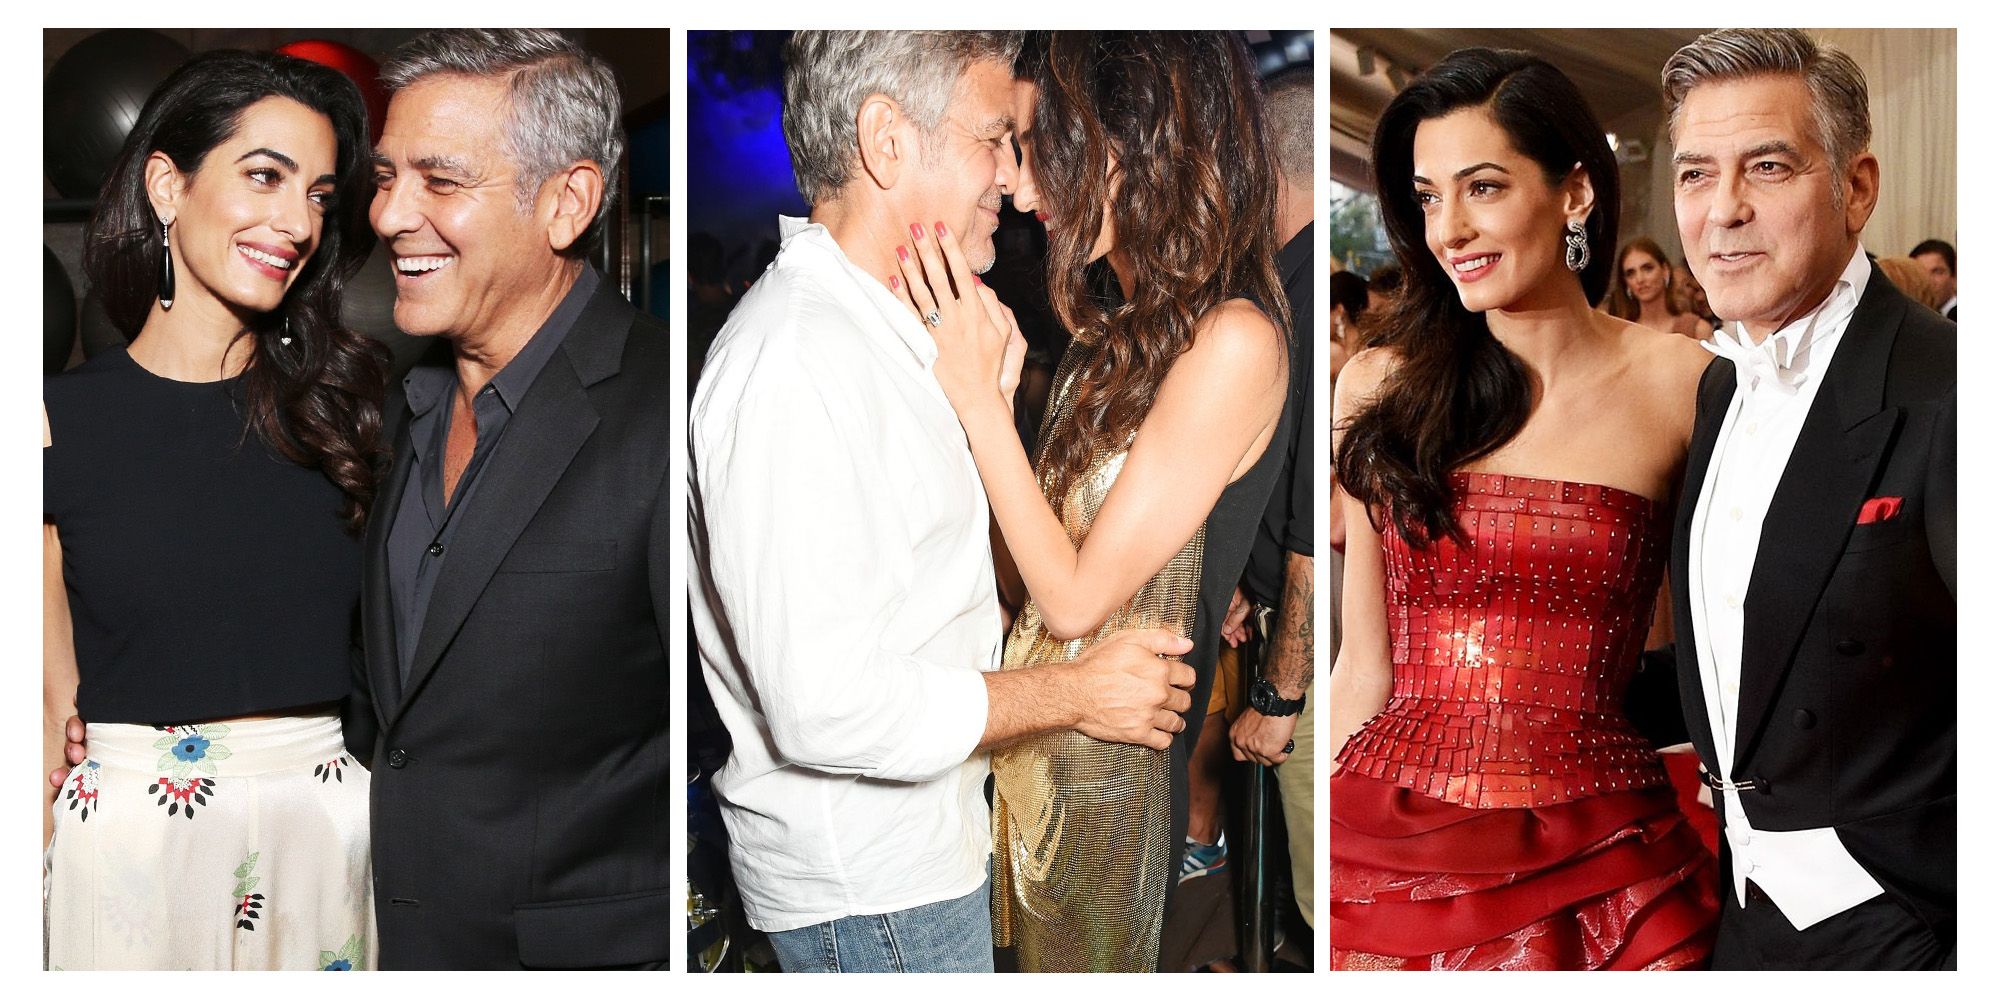 96 Best George Clooney ideas | actori, george clooney, wes anderson